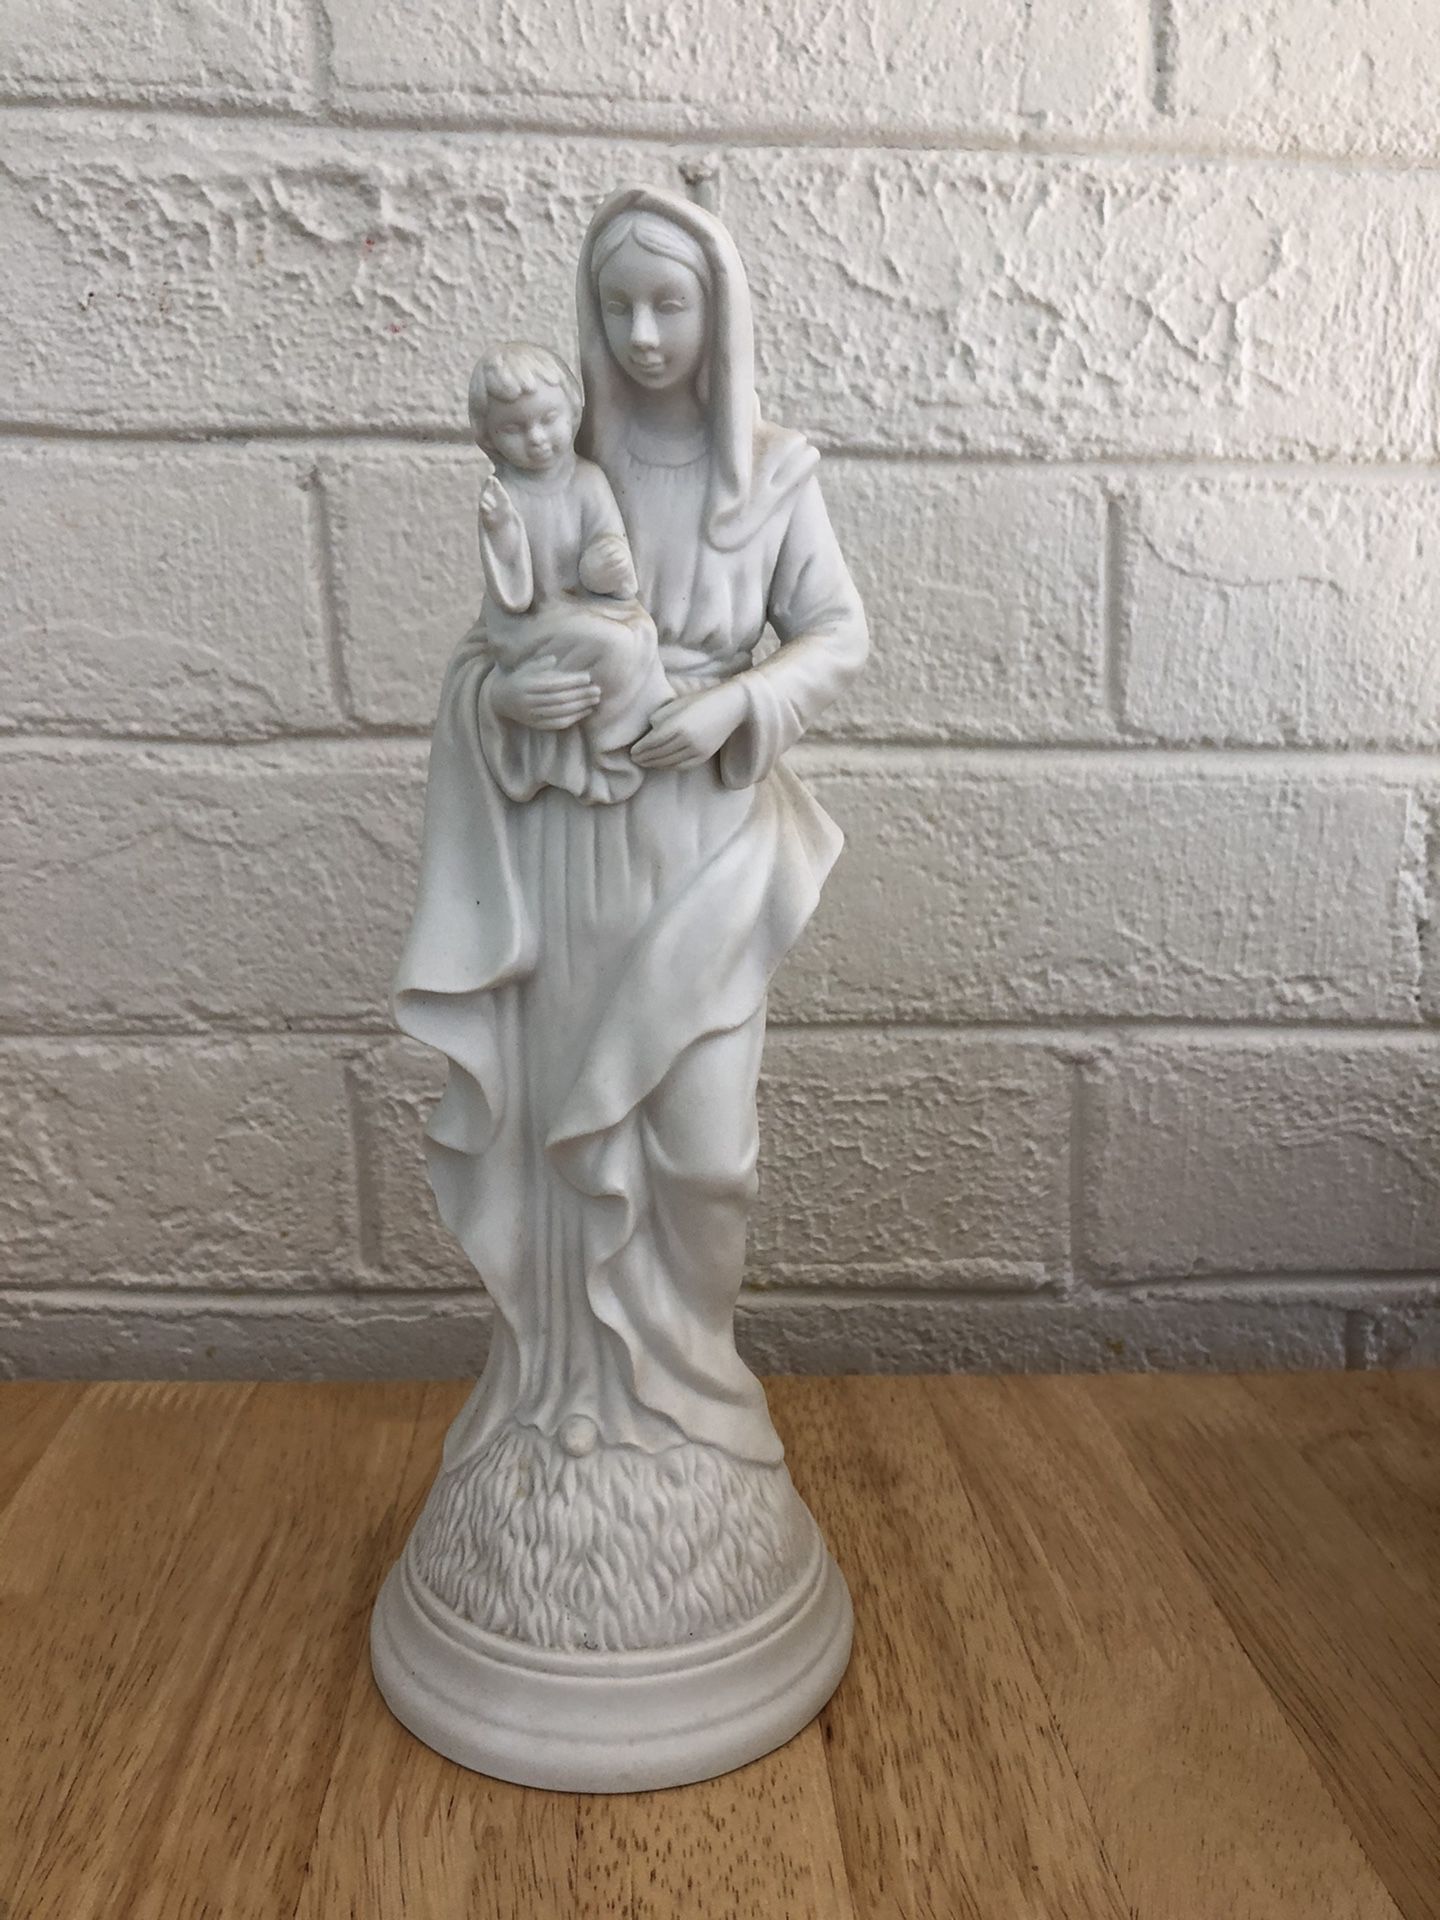 Schmid Musical Figurine "Virgin and Baby Jesus”